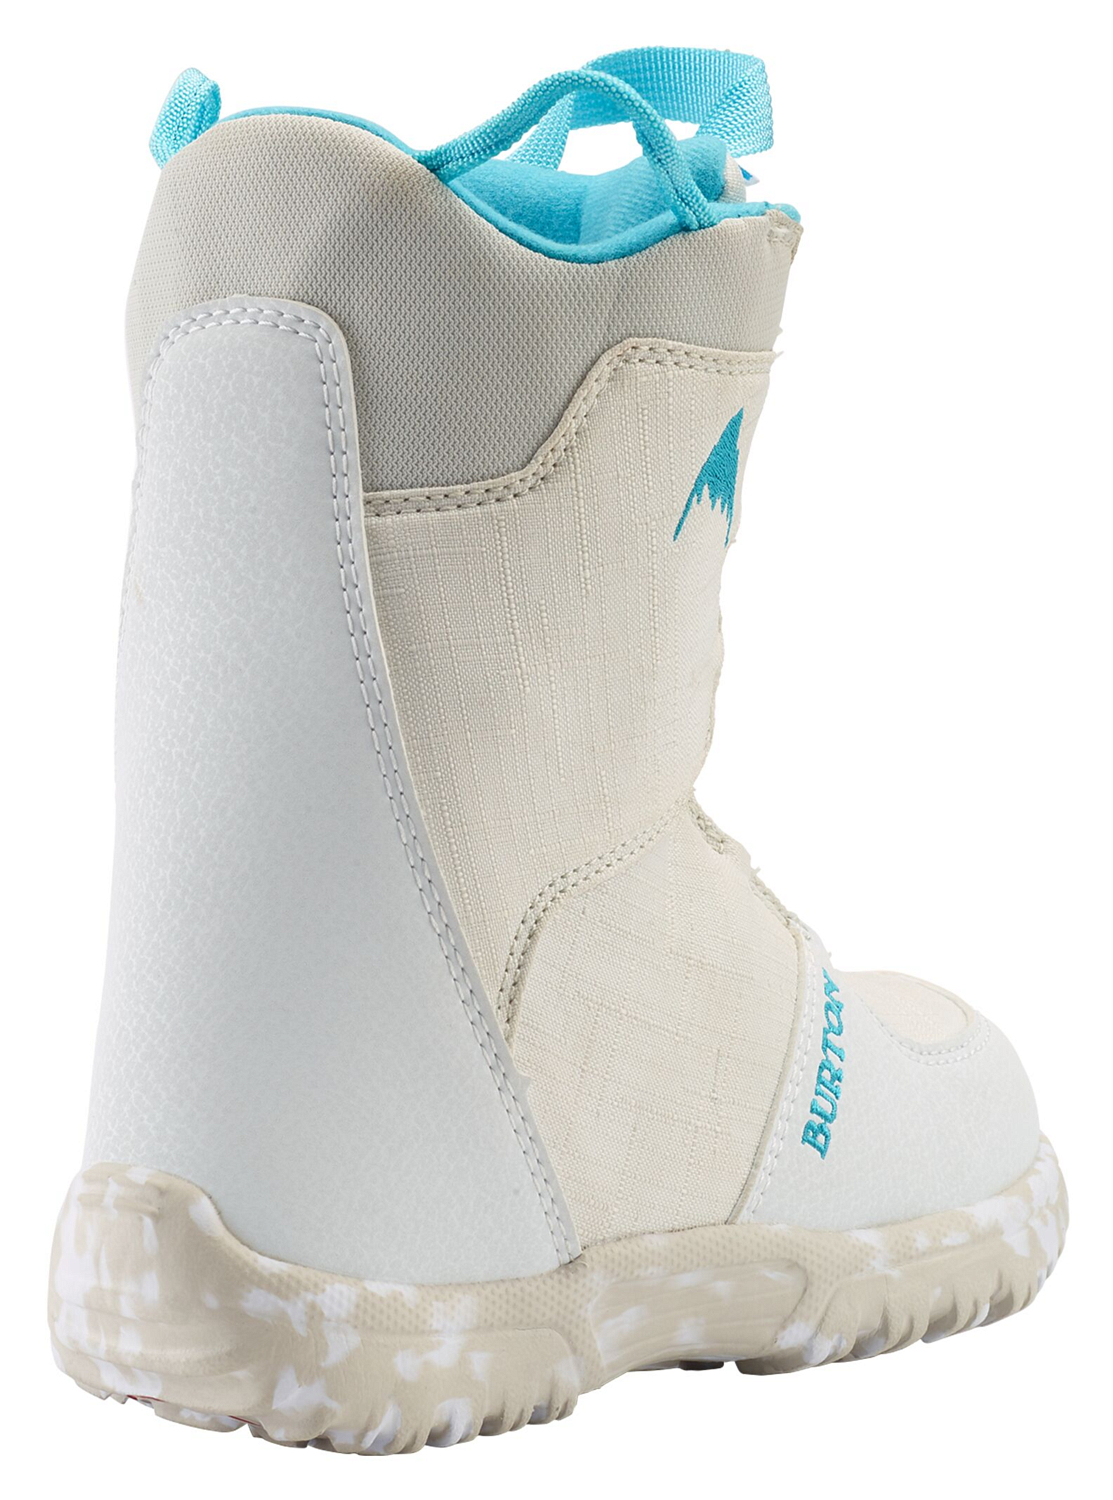 Ботинки для сноуборда BURTON 2020-21 Grom Boa White